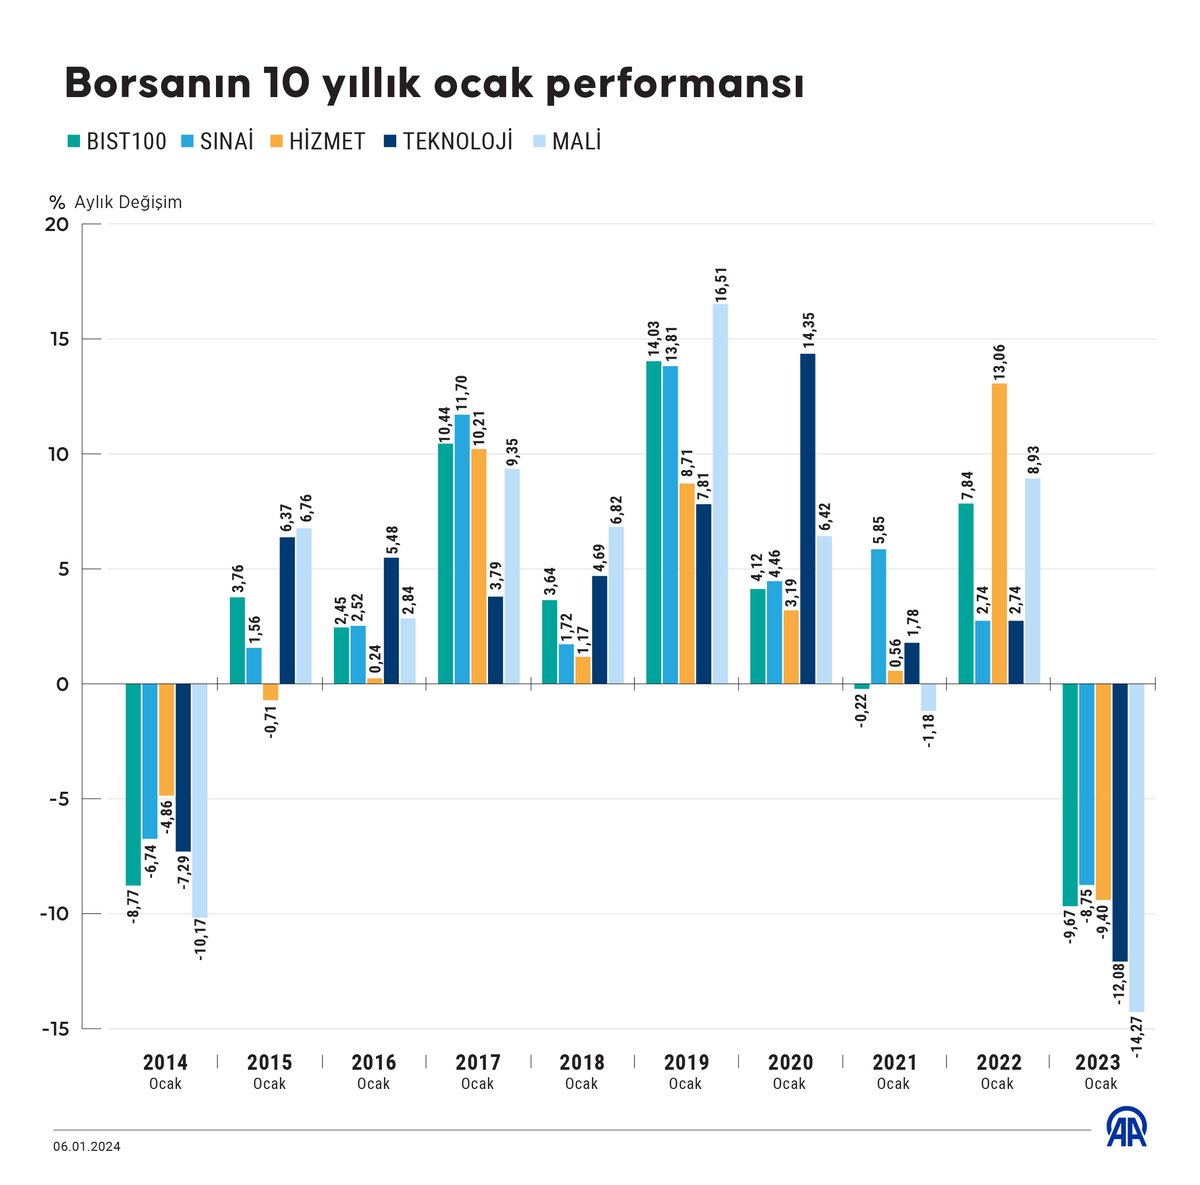 Borsa İstanbul'da #bist100 endeksi, son 10 yılın ocak aylarında sadece 3 kez negatif aylık performans gösterirken ana endekslerden sınai ve teknoloji aynı dönemde yalnızca 2'şer kez geriledi.